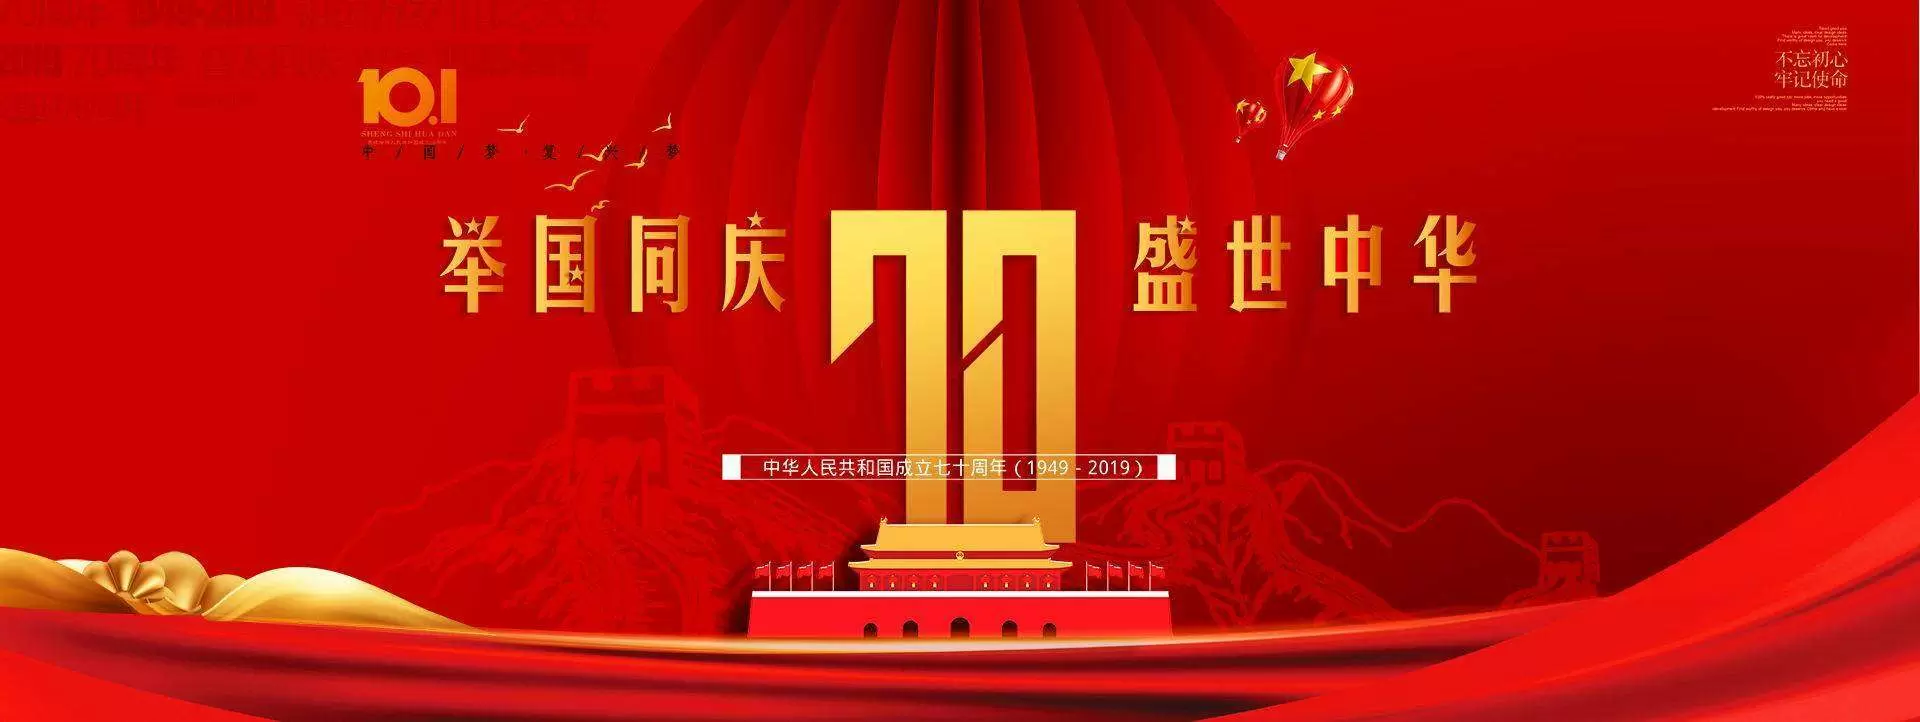 -《森普周刊》第三十六期-热烈庆祝新中国成立70周年！